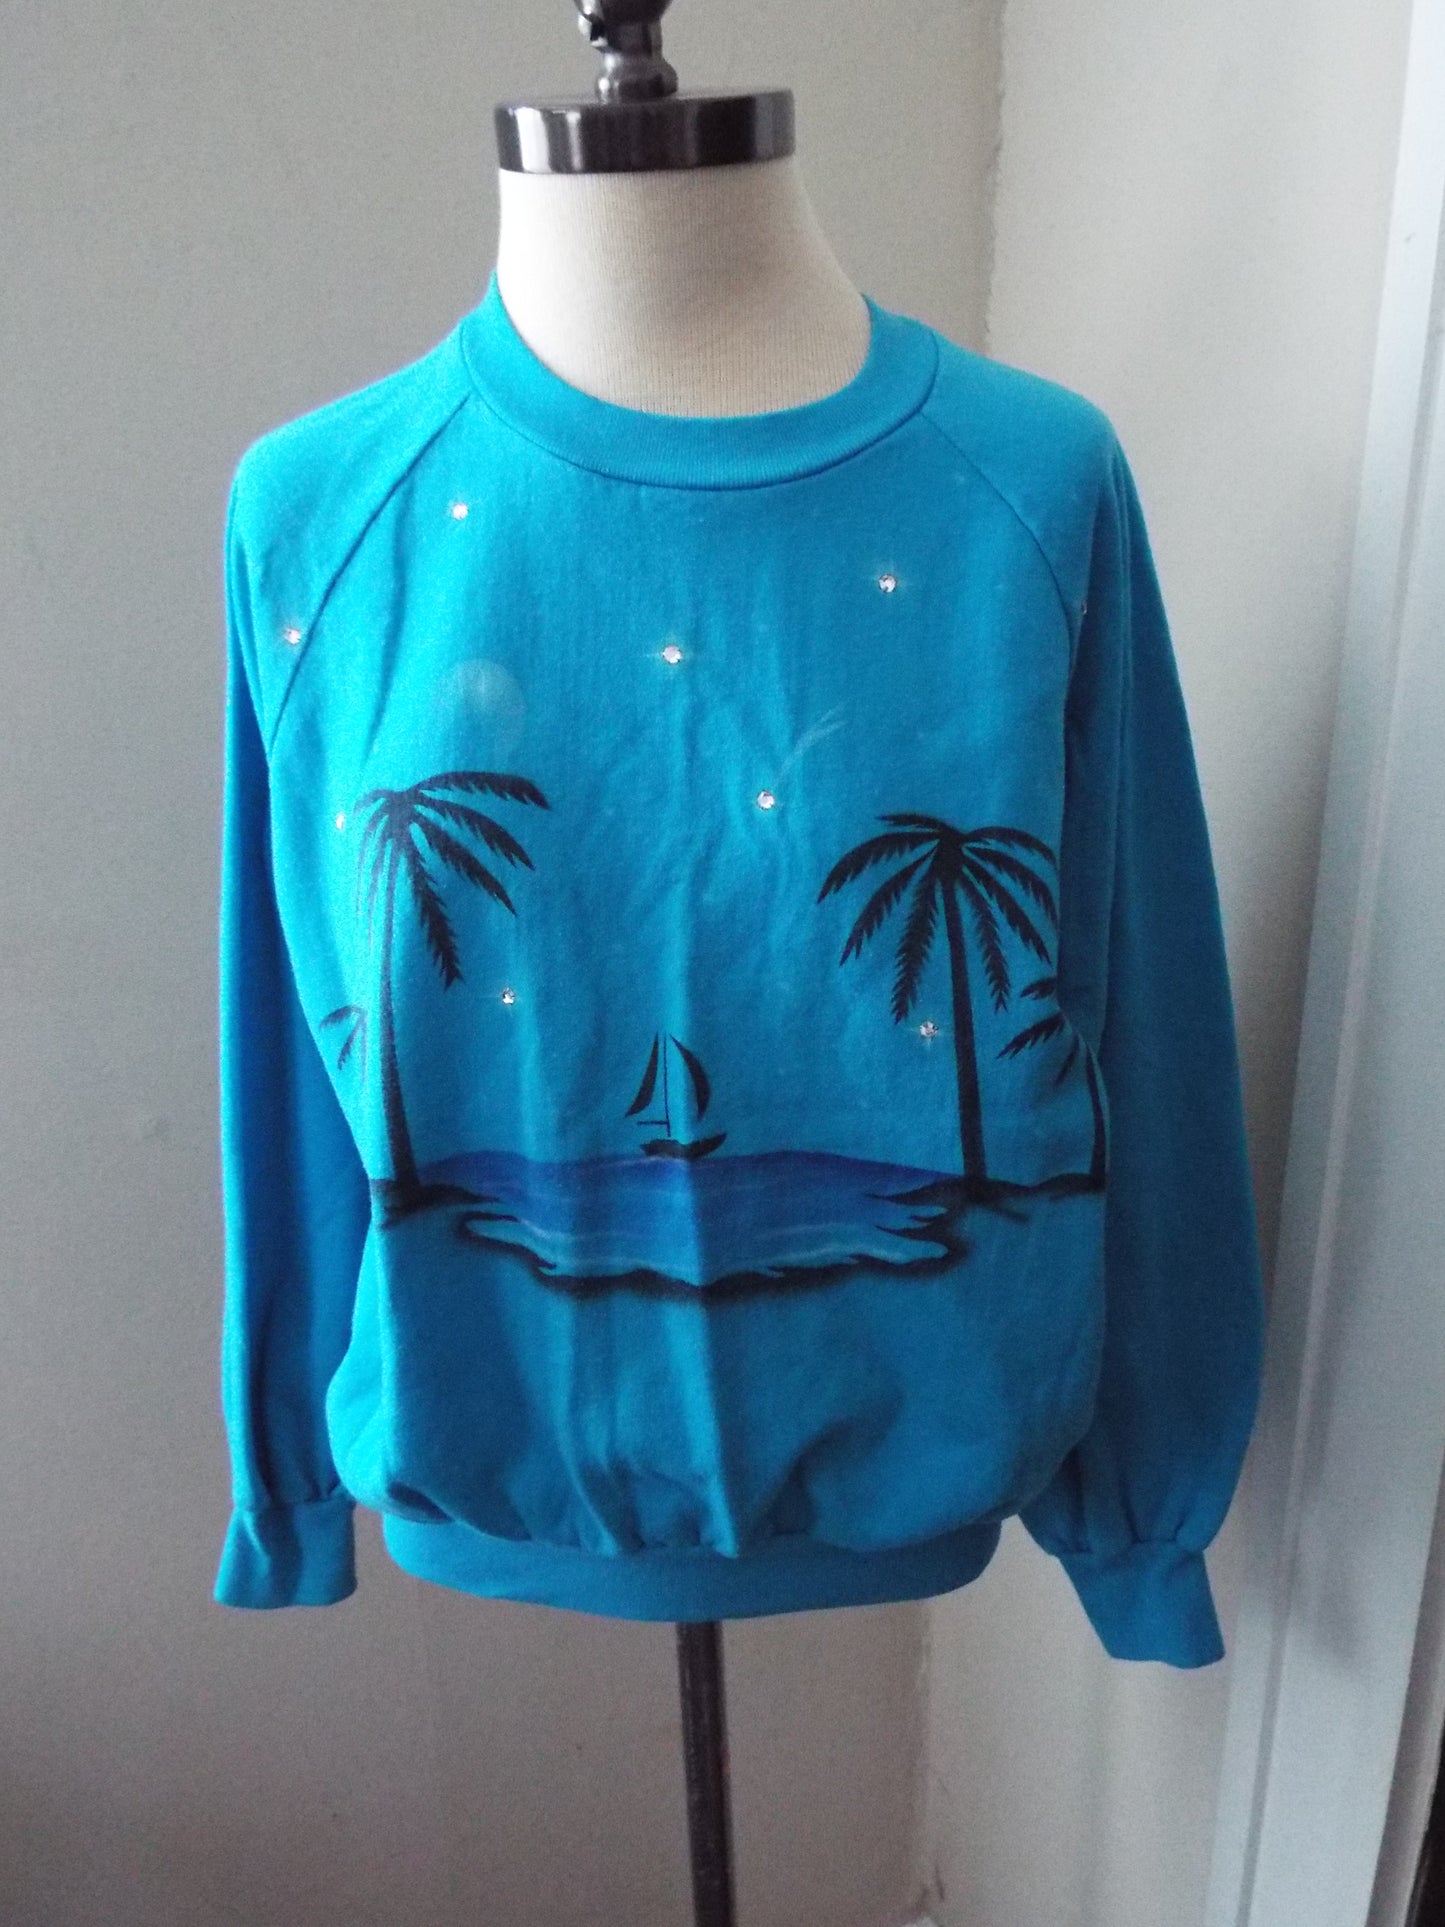 Vintage Air Brushed Beach Sweatshirt by Rudman